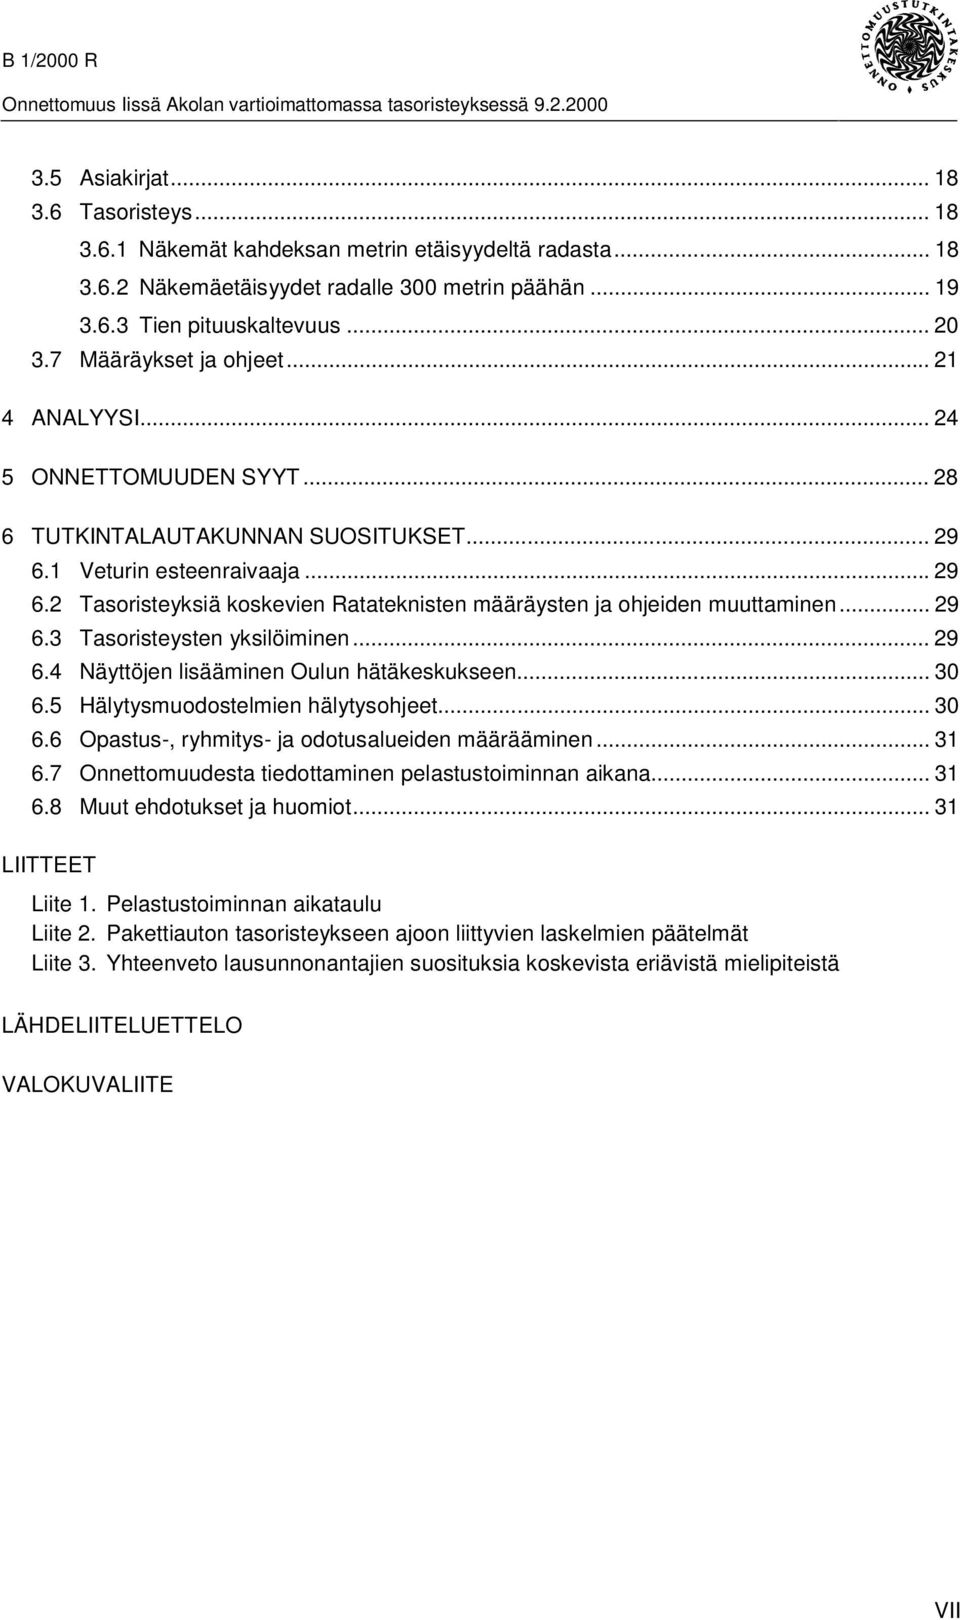 .. 29 6.3 Tasoristeysten yksilöiminen... 29 6.4 Näyttöjen lisääminen Oulun hätäkeskukseen... 30 6.5 Hälytysmuodostelmien hälytysohjeet... 30 6.6 Opastus-, ryhmitys- ja odotusalueiden määrääminen.